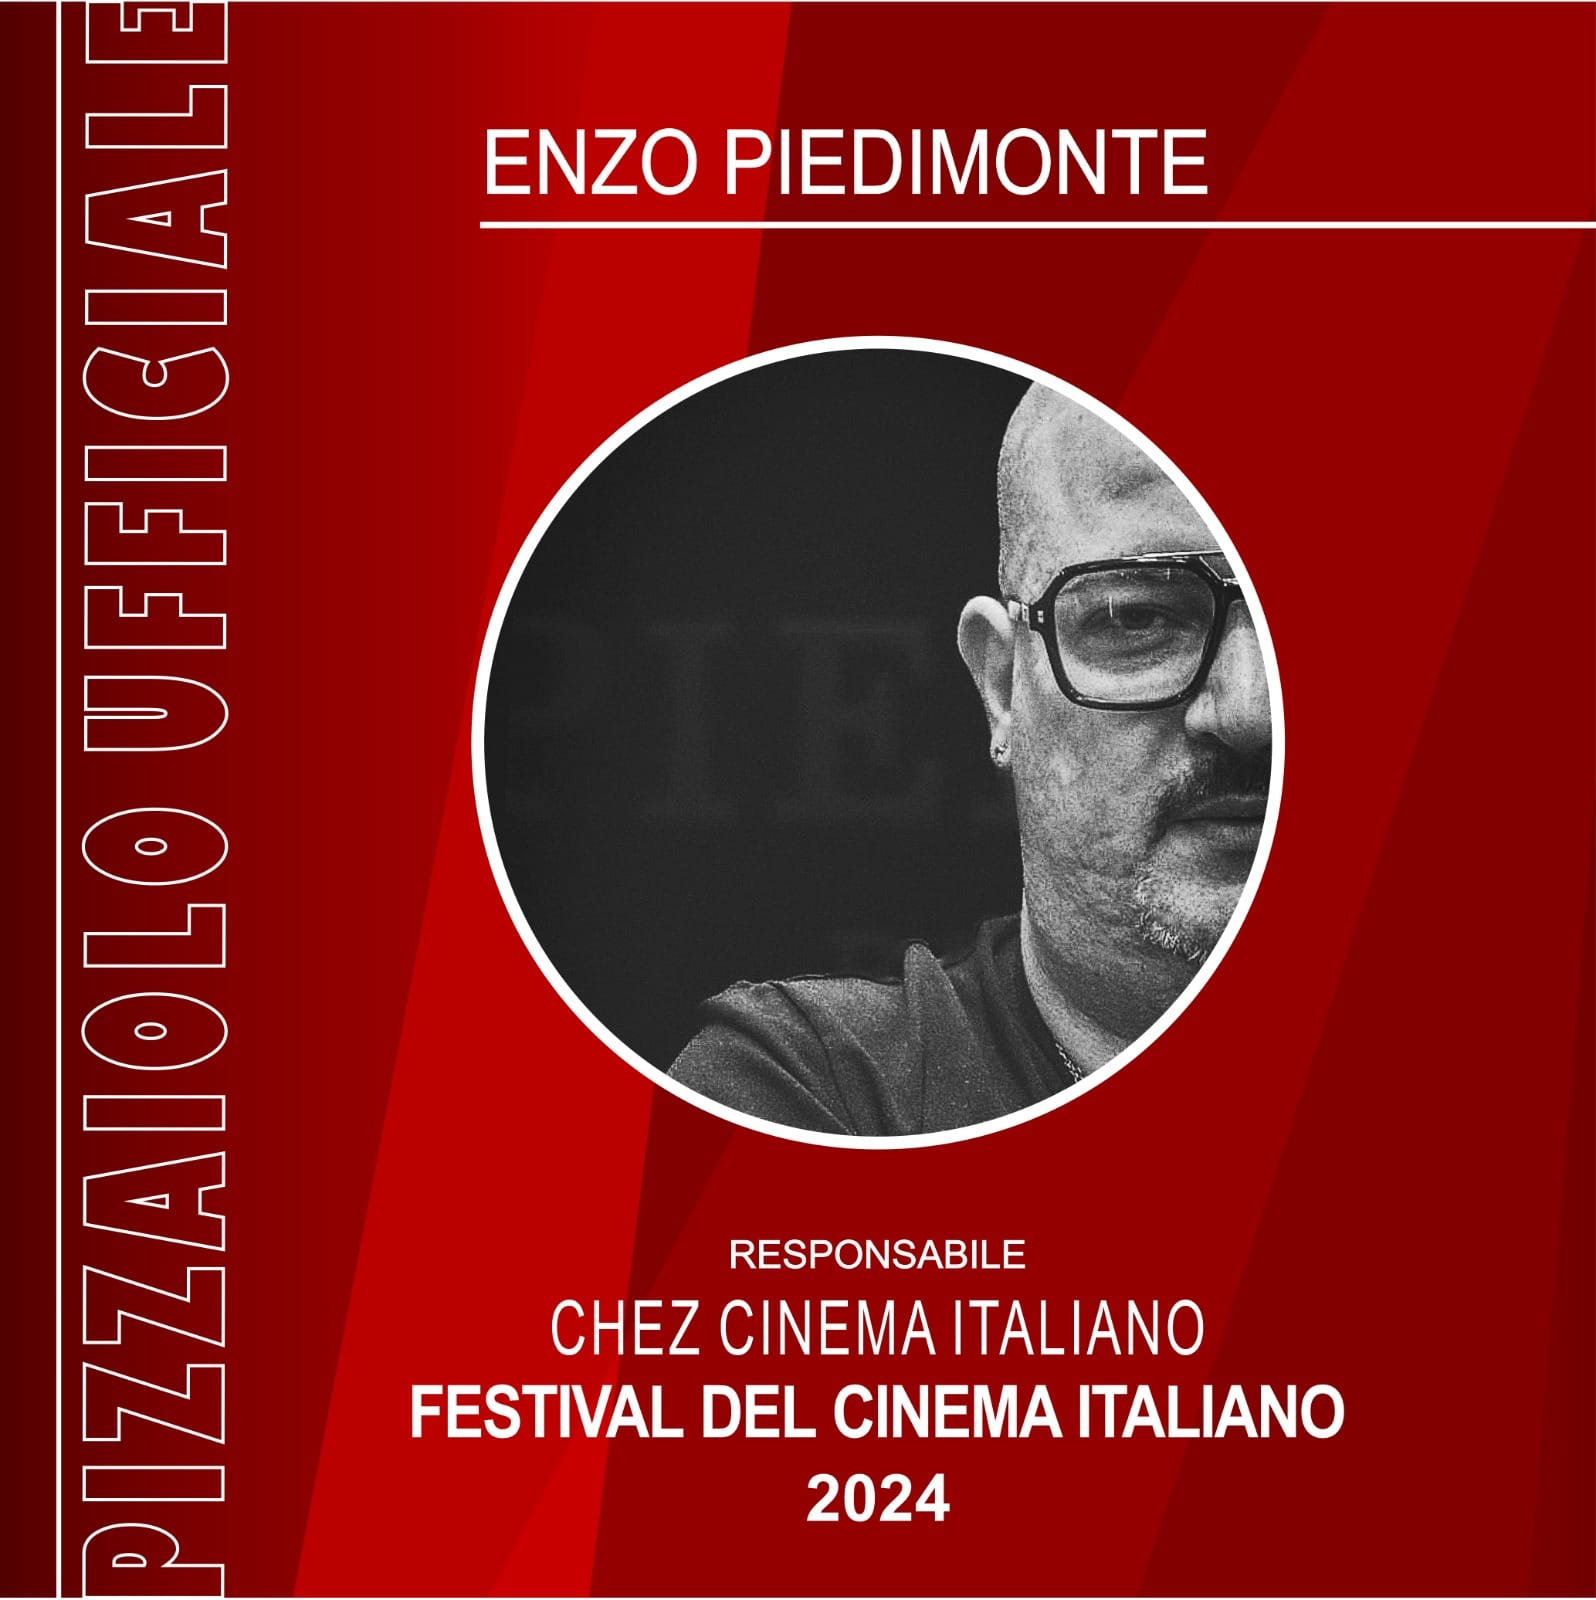 Festival del cinema italiano, la nuova sfida dello chef Piedimonte